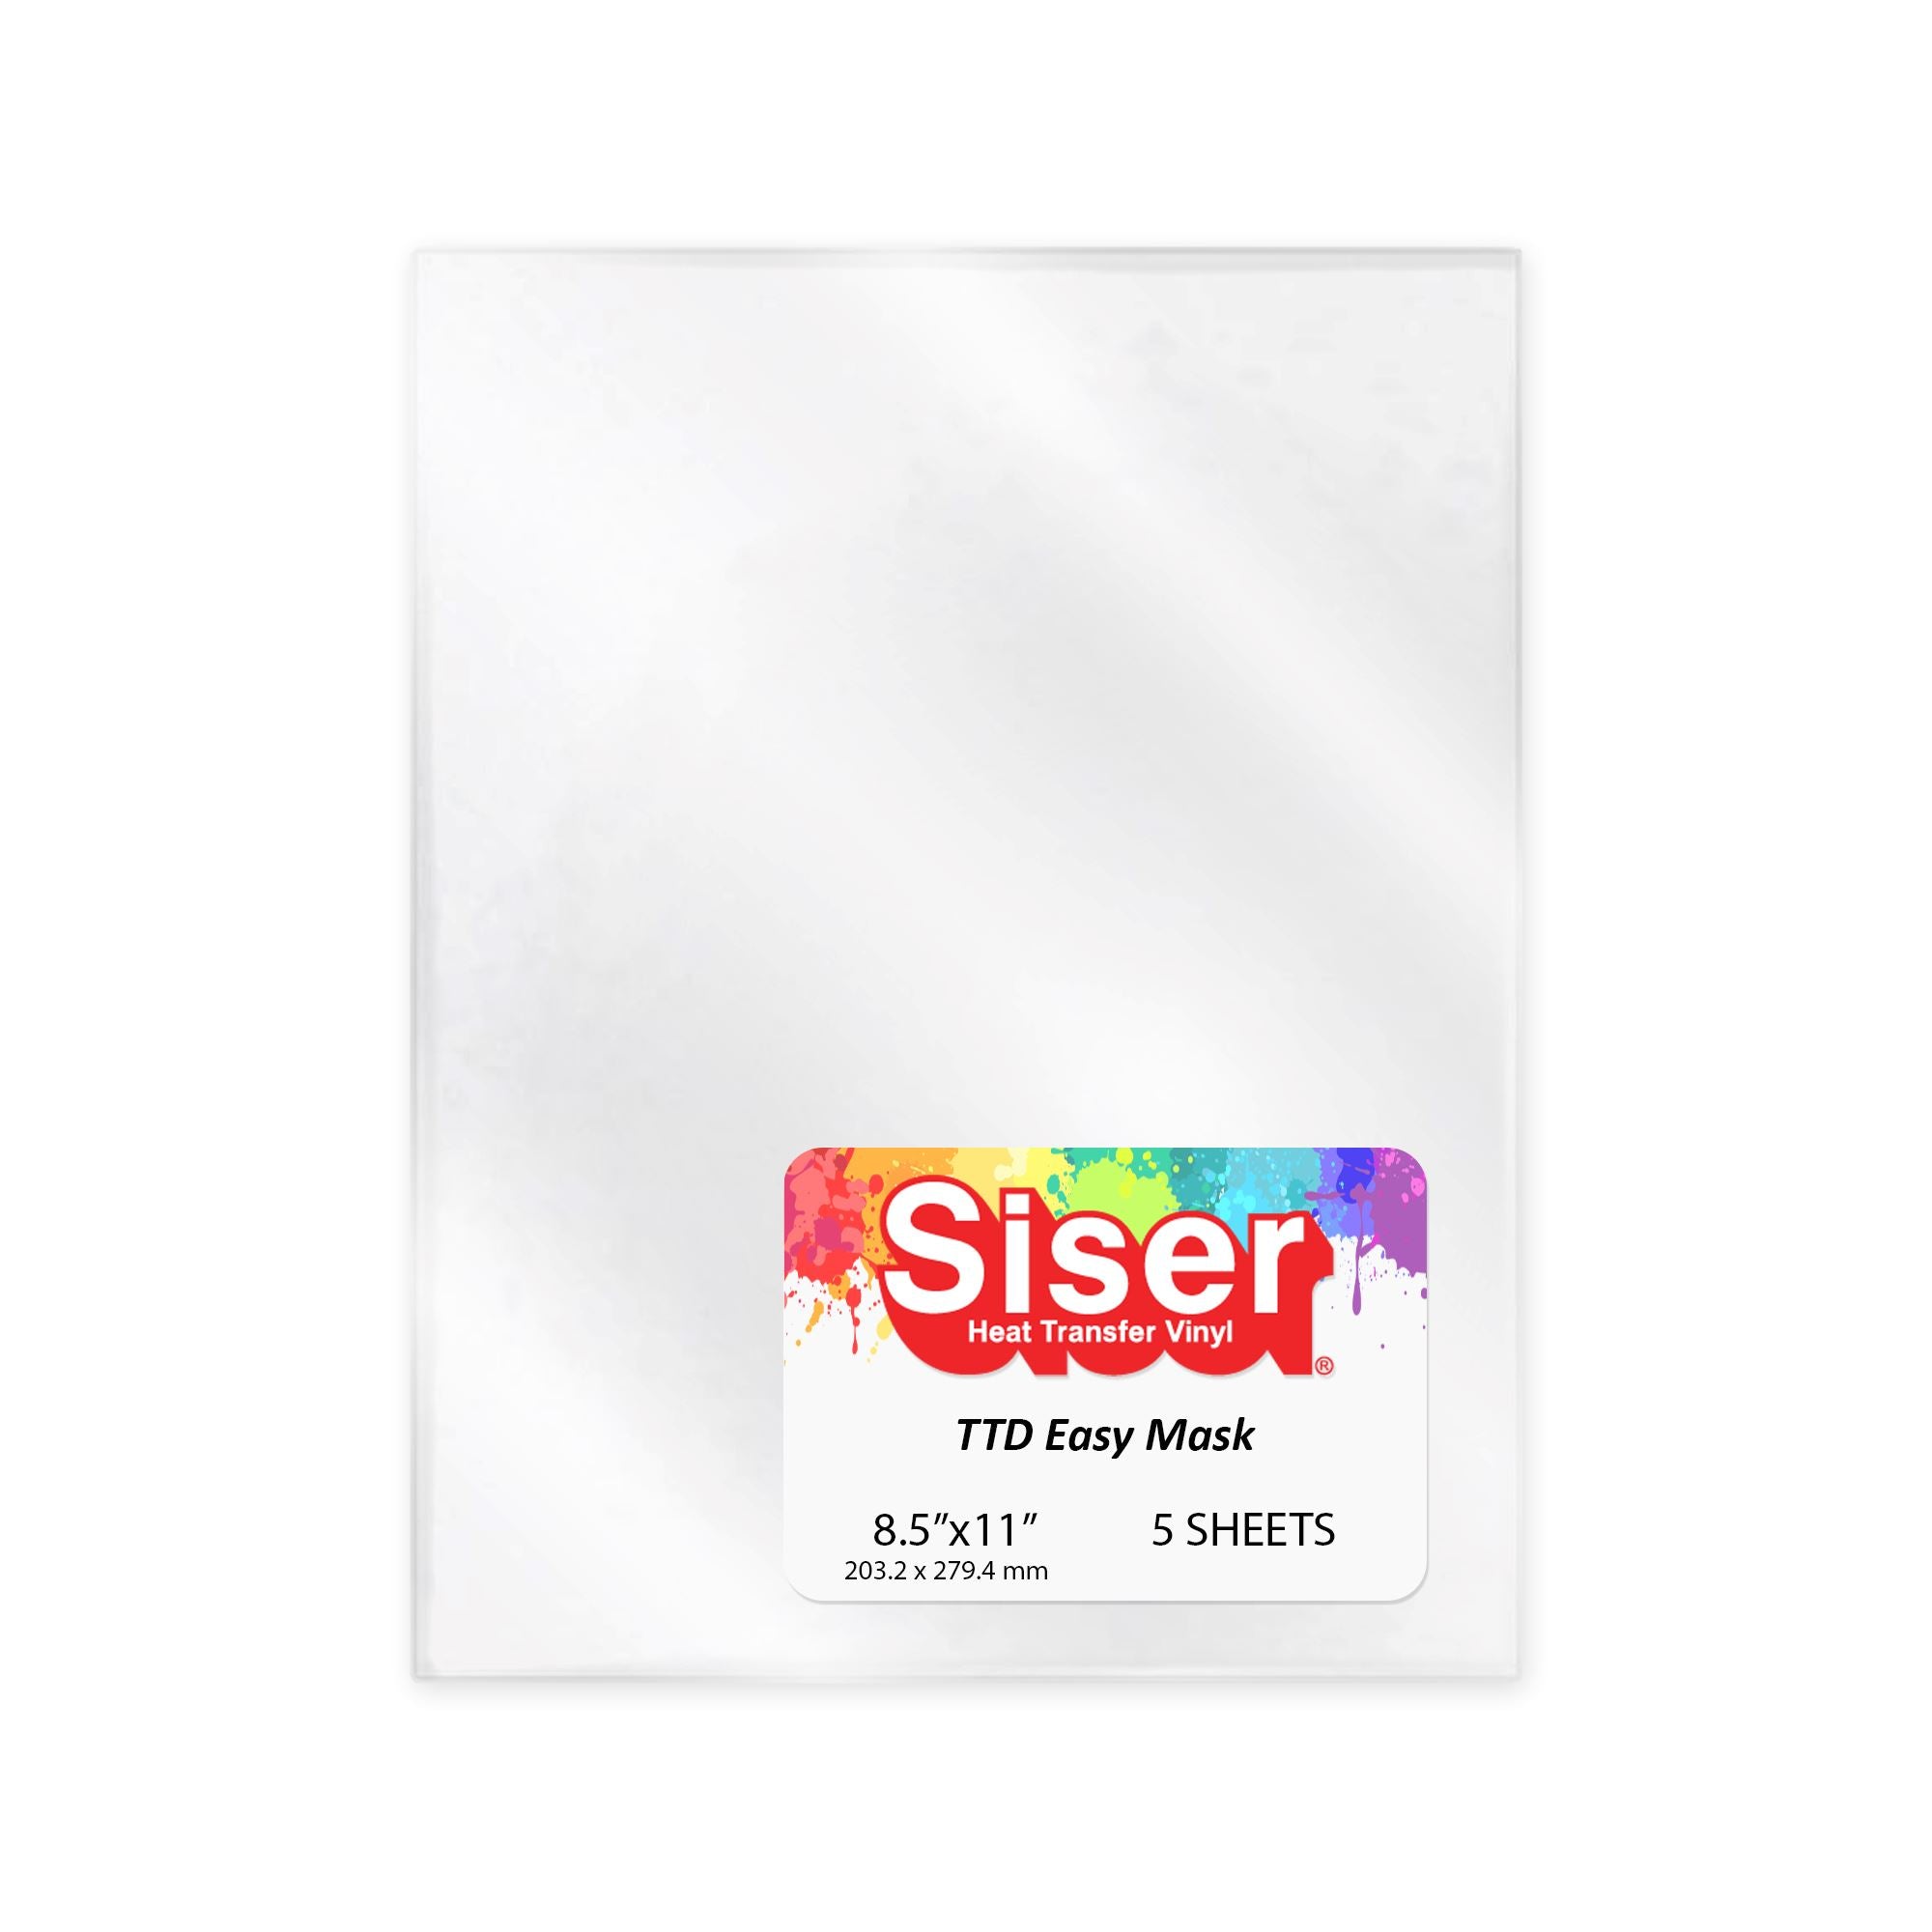 Siser Heat Transfer Vinyl Starter Kit